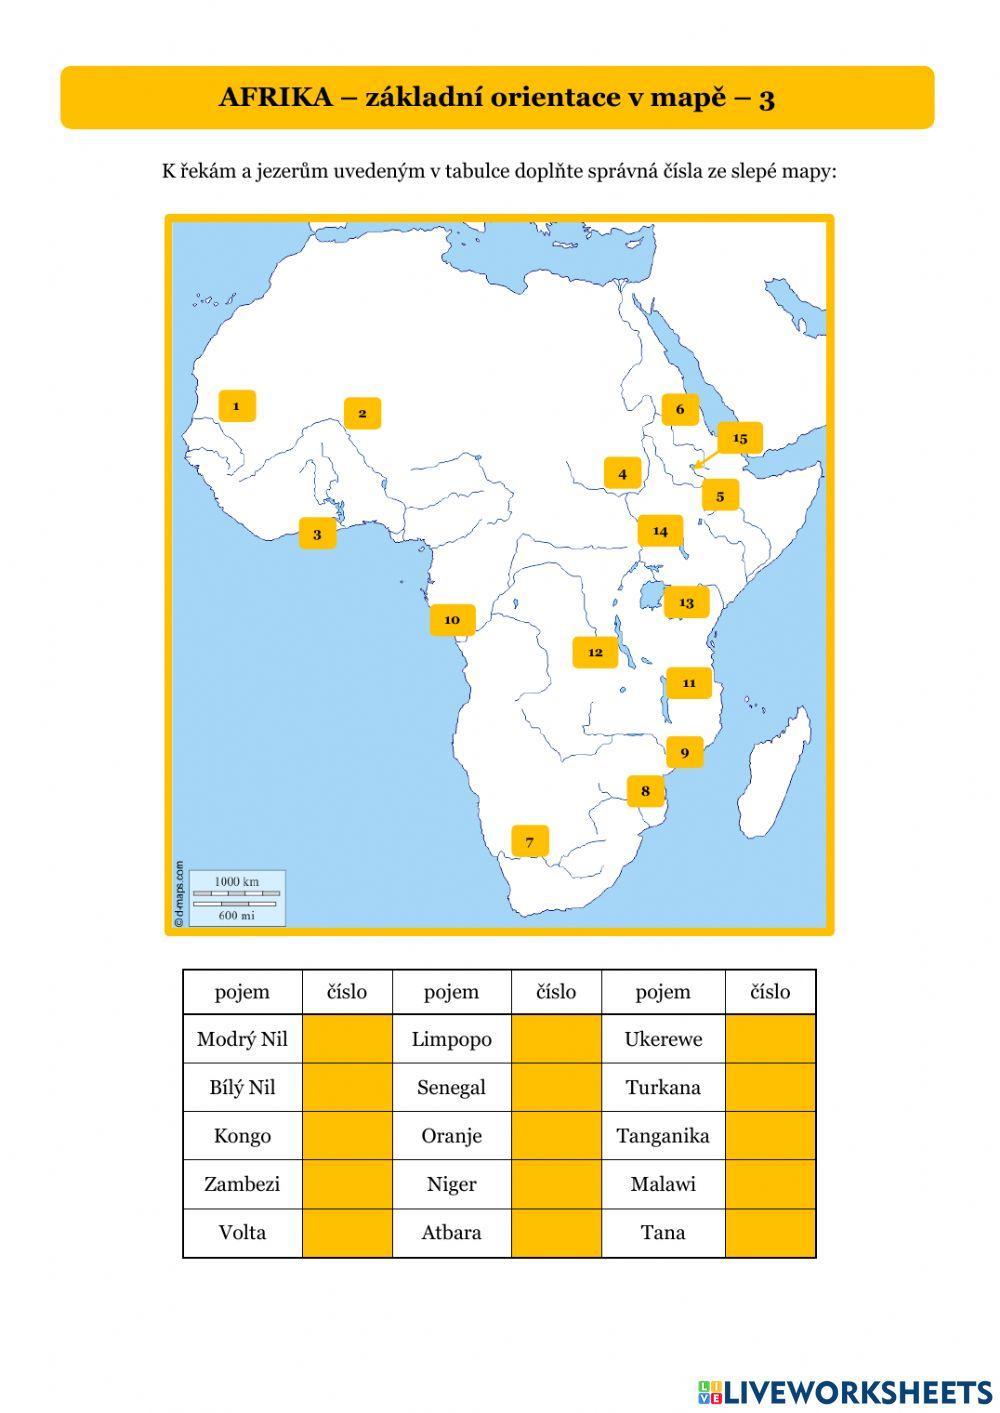 AFRIKA - orientace v mapě 3